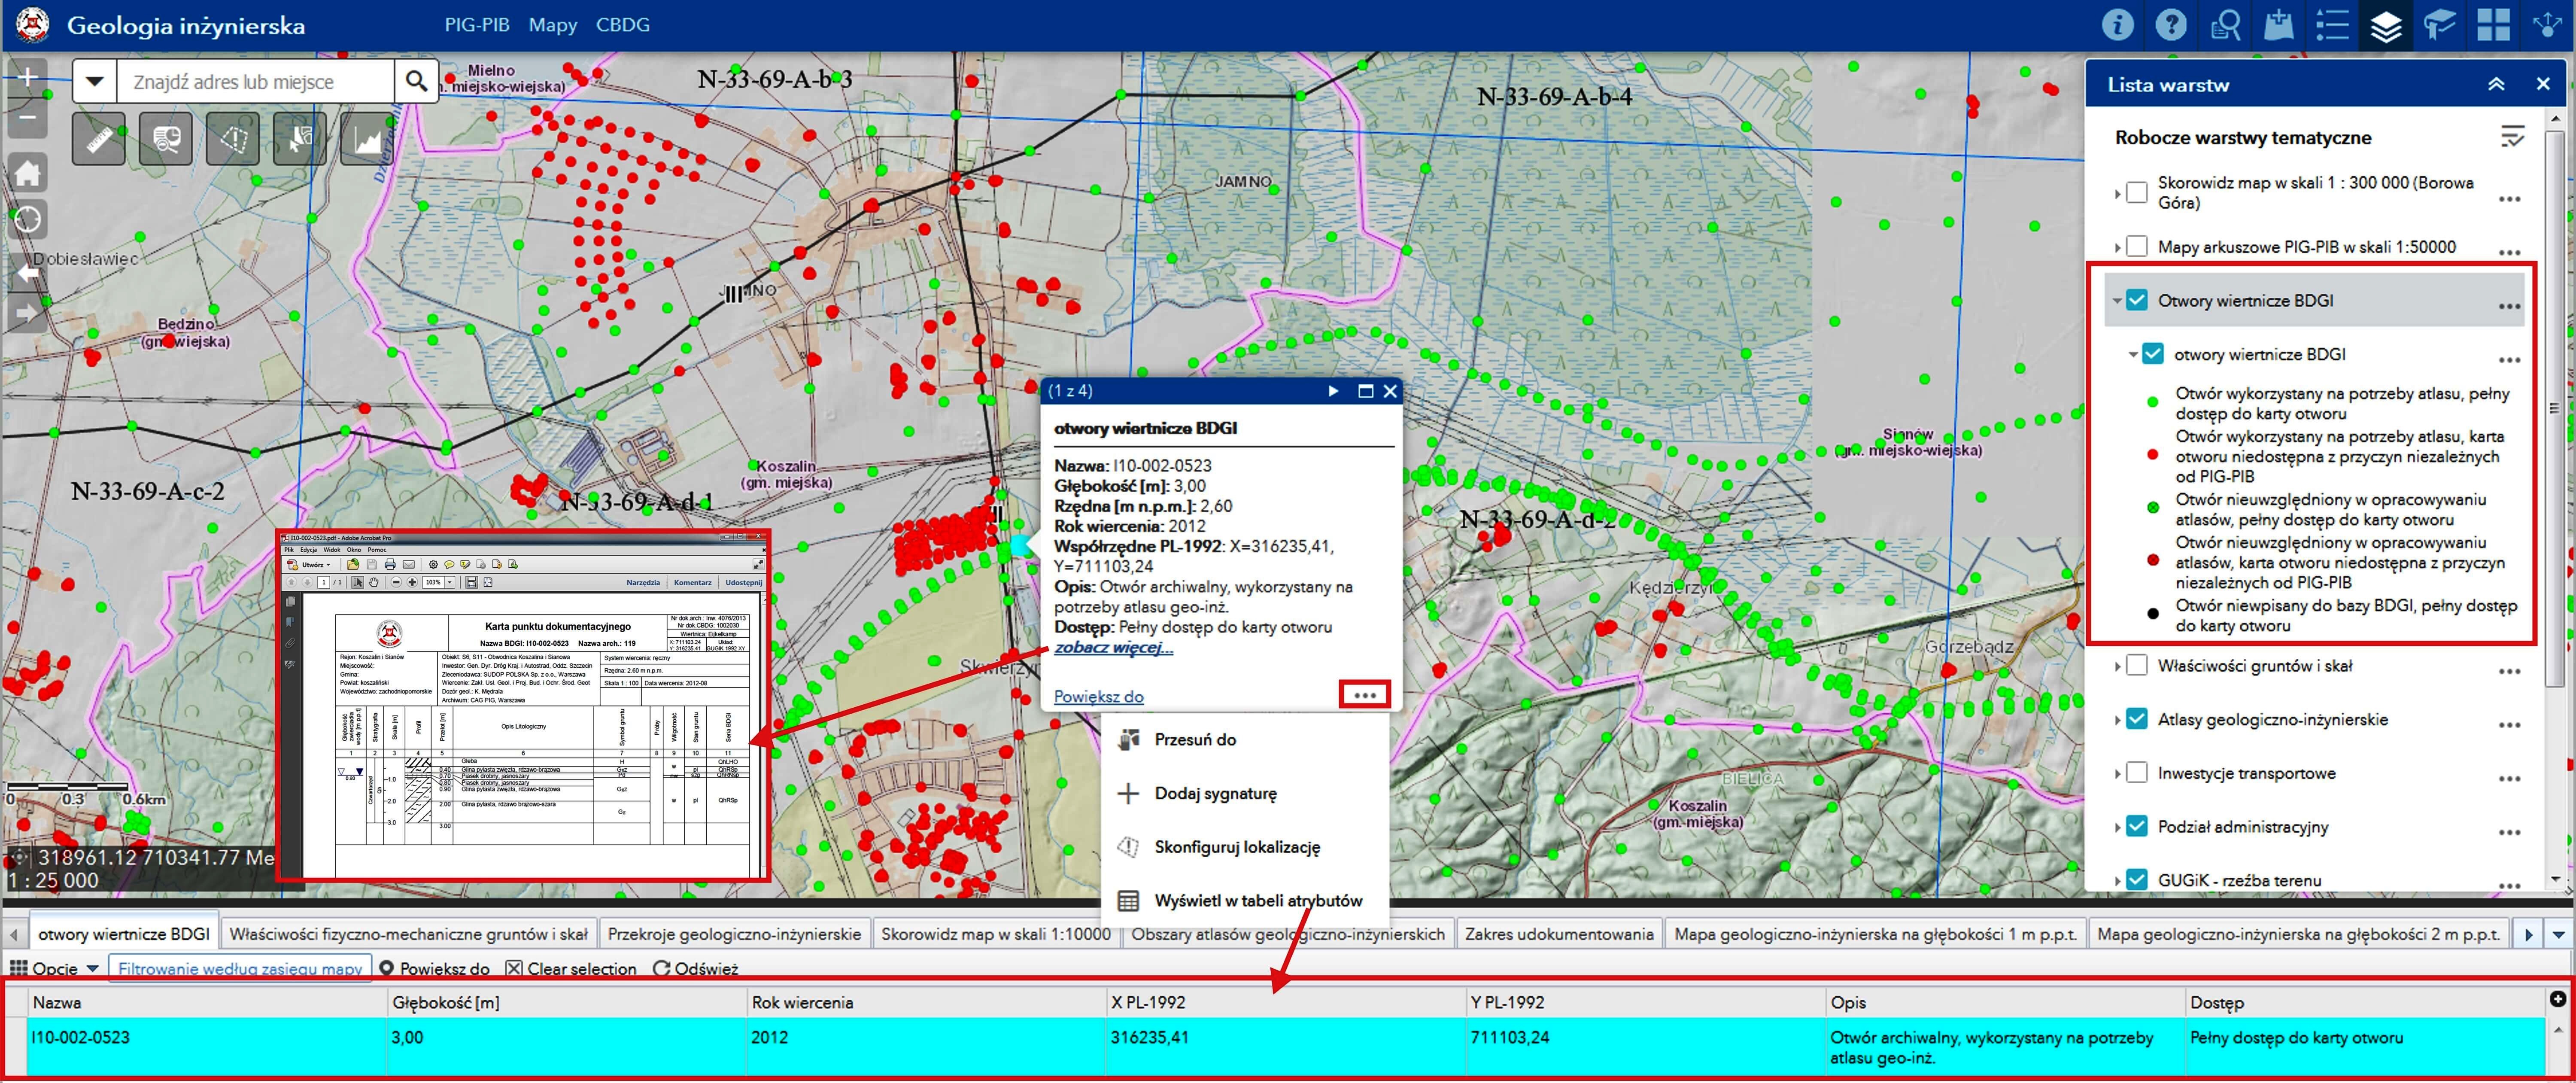 Portal CBDG. Widok aplikacji mapowej (Portal for ArcGIS) prezentujący warstwę otworów geologiczno-inżynierskich wraz z danymi opisowymi